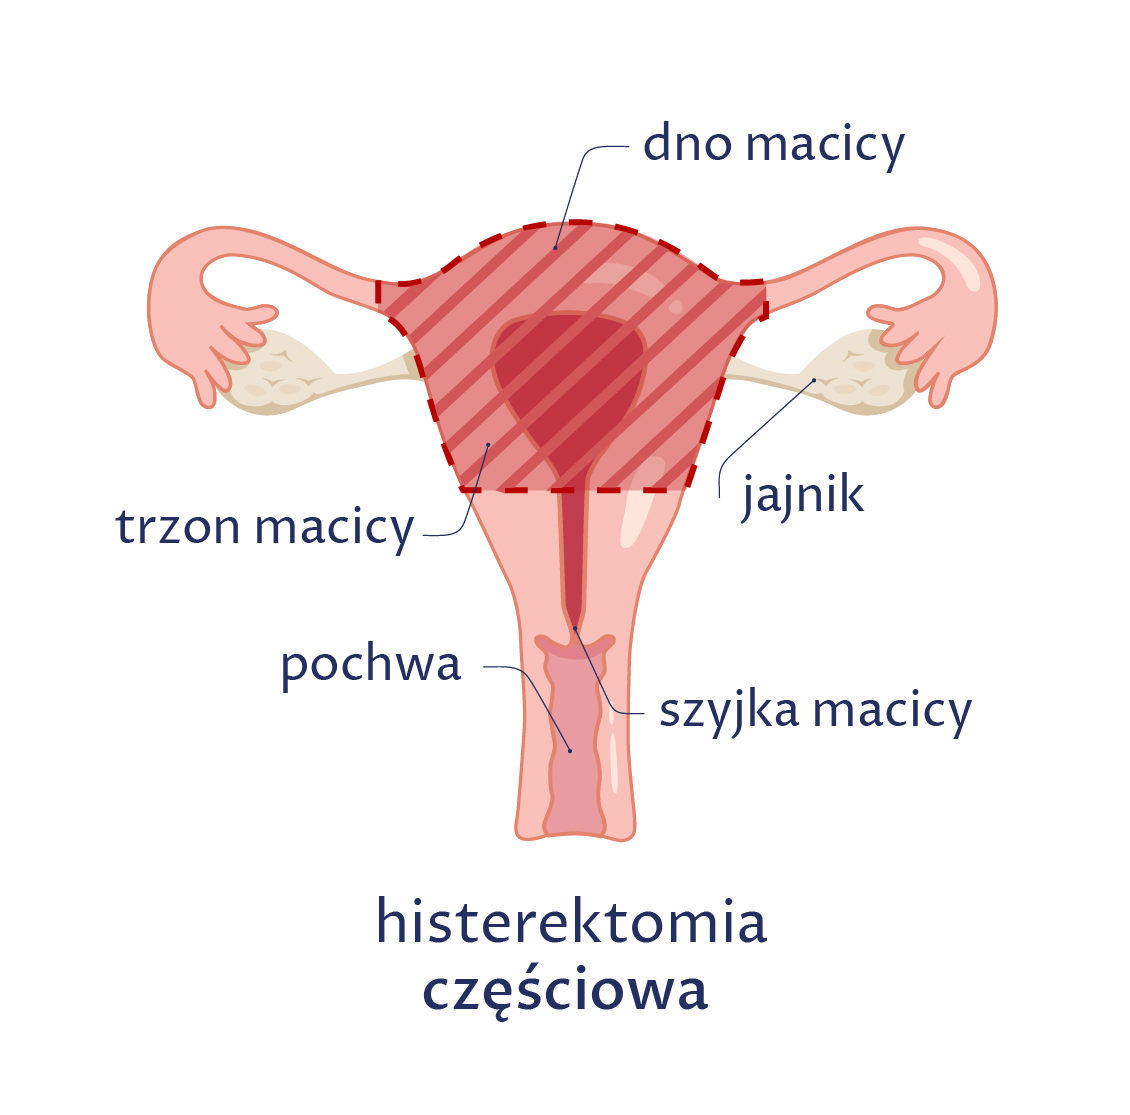 Rysunek przedstawia histerektomię częściową, podczas której wycina się tylko trzon macicy, a pozostawia jajniki, jajowody, całą pochwę, szyjkę macicy i przymacicze.